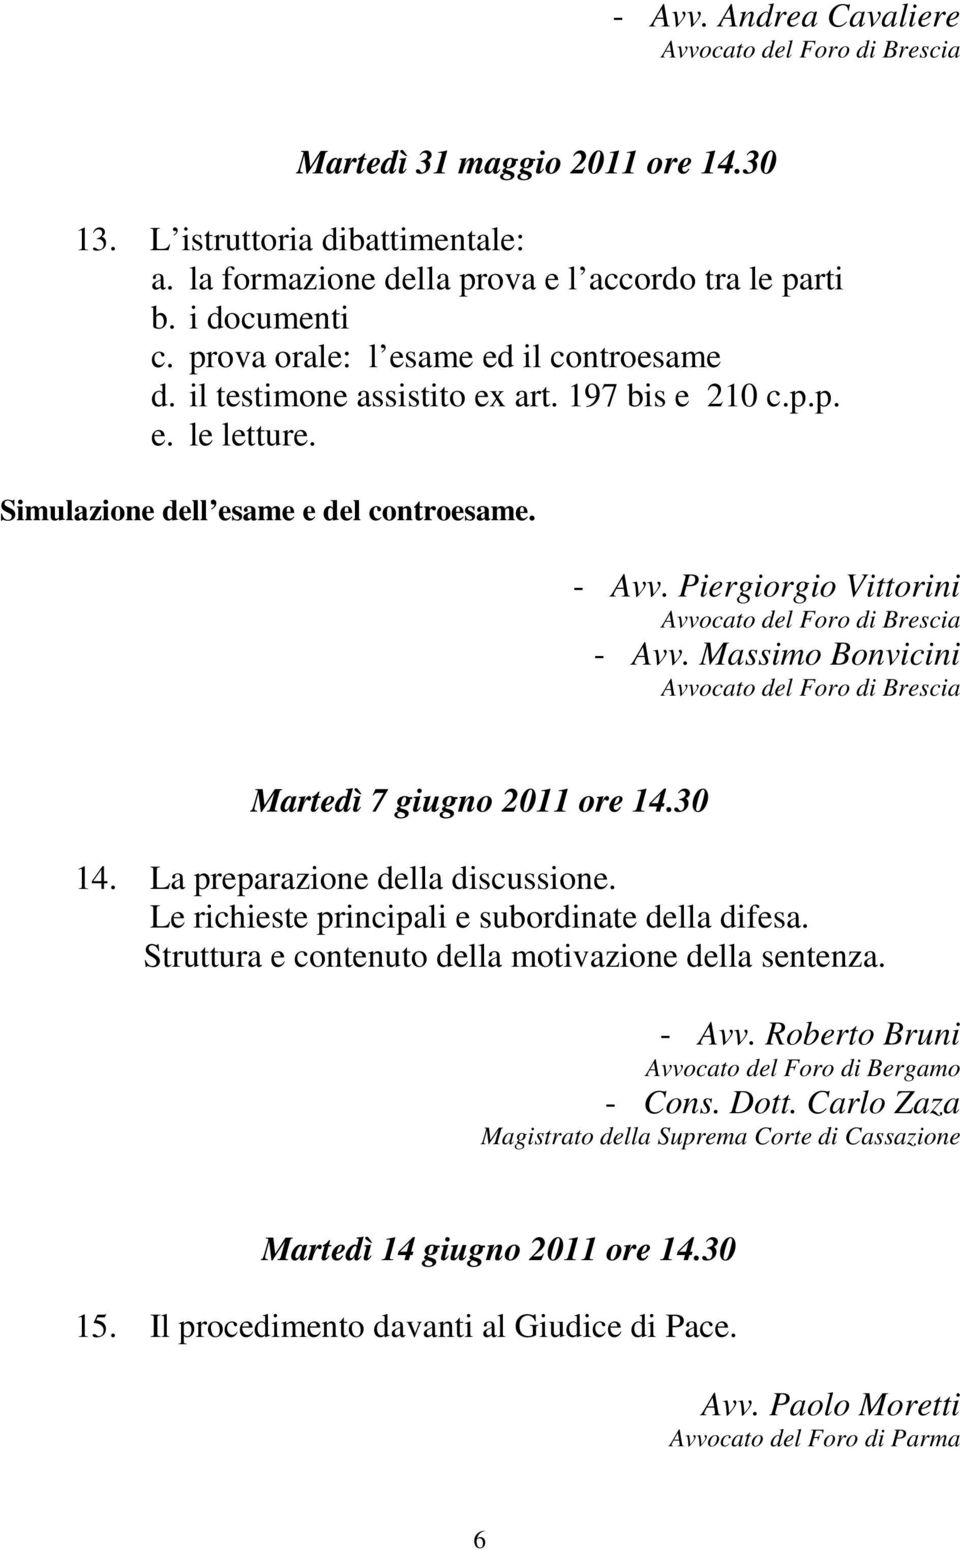 Massimo Bonvicini Martedì 7 giugno 2011 ore 14.30 14. La preparazione della discussione. Le richieste principali e subordinate della difesa.